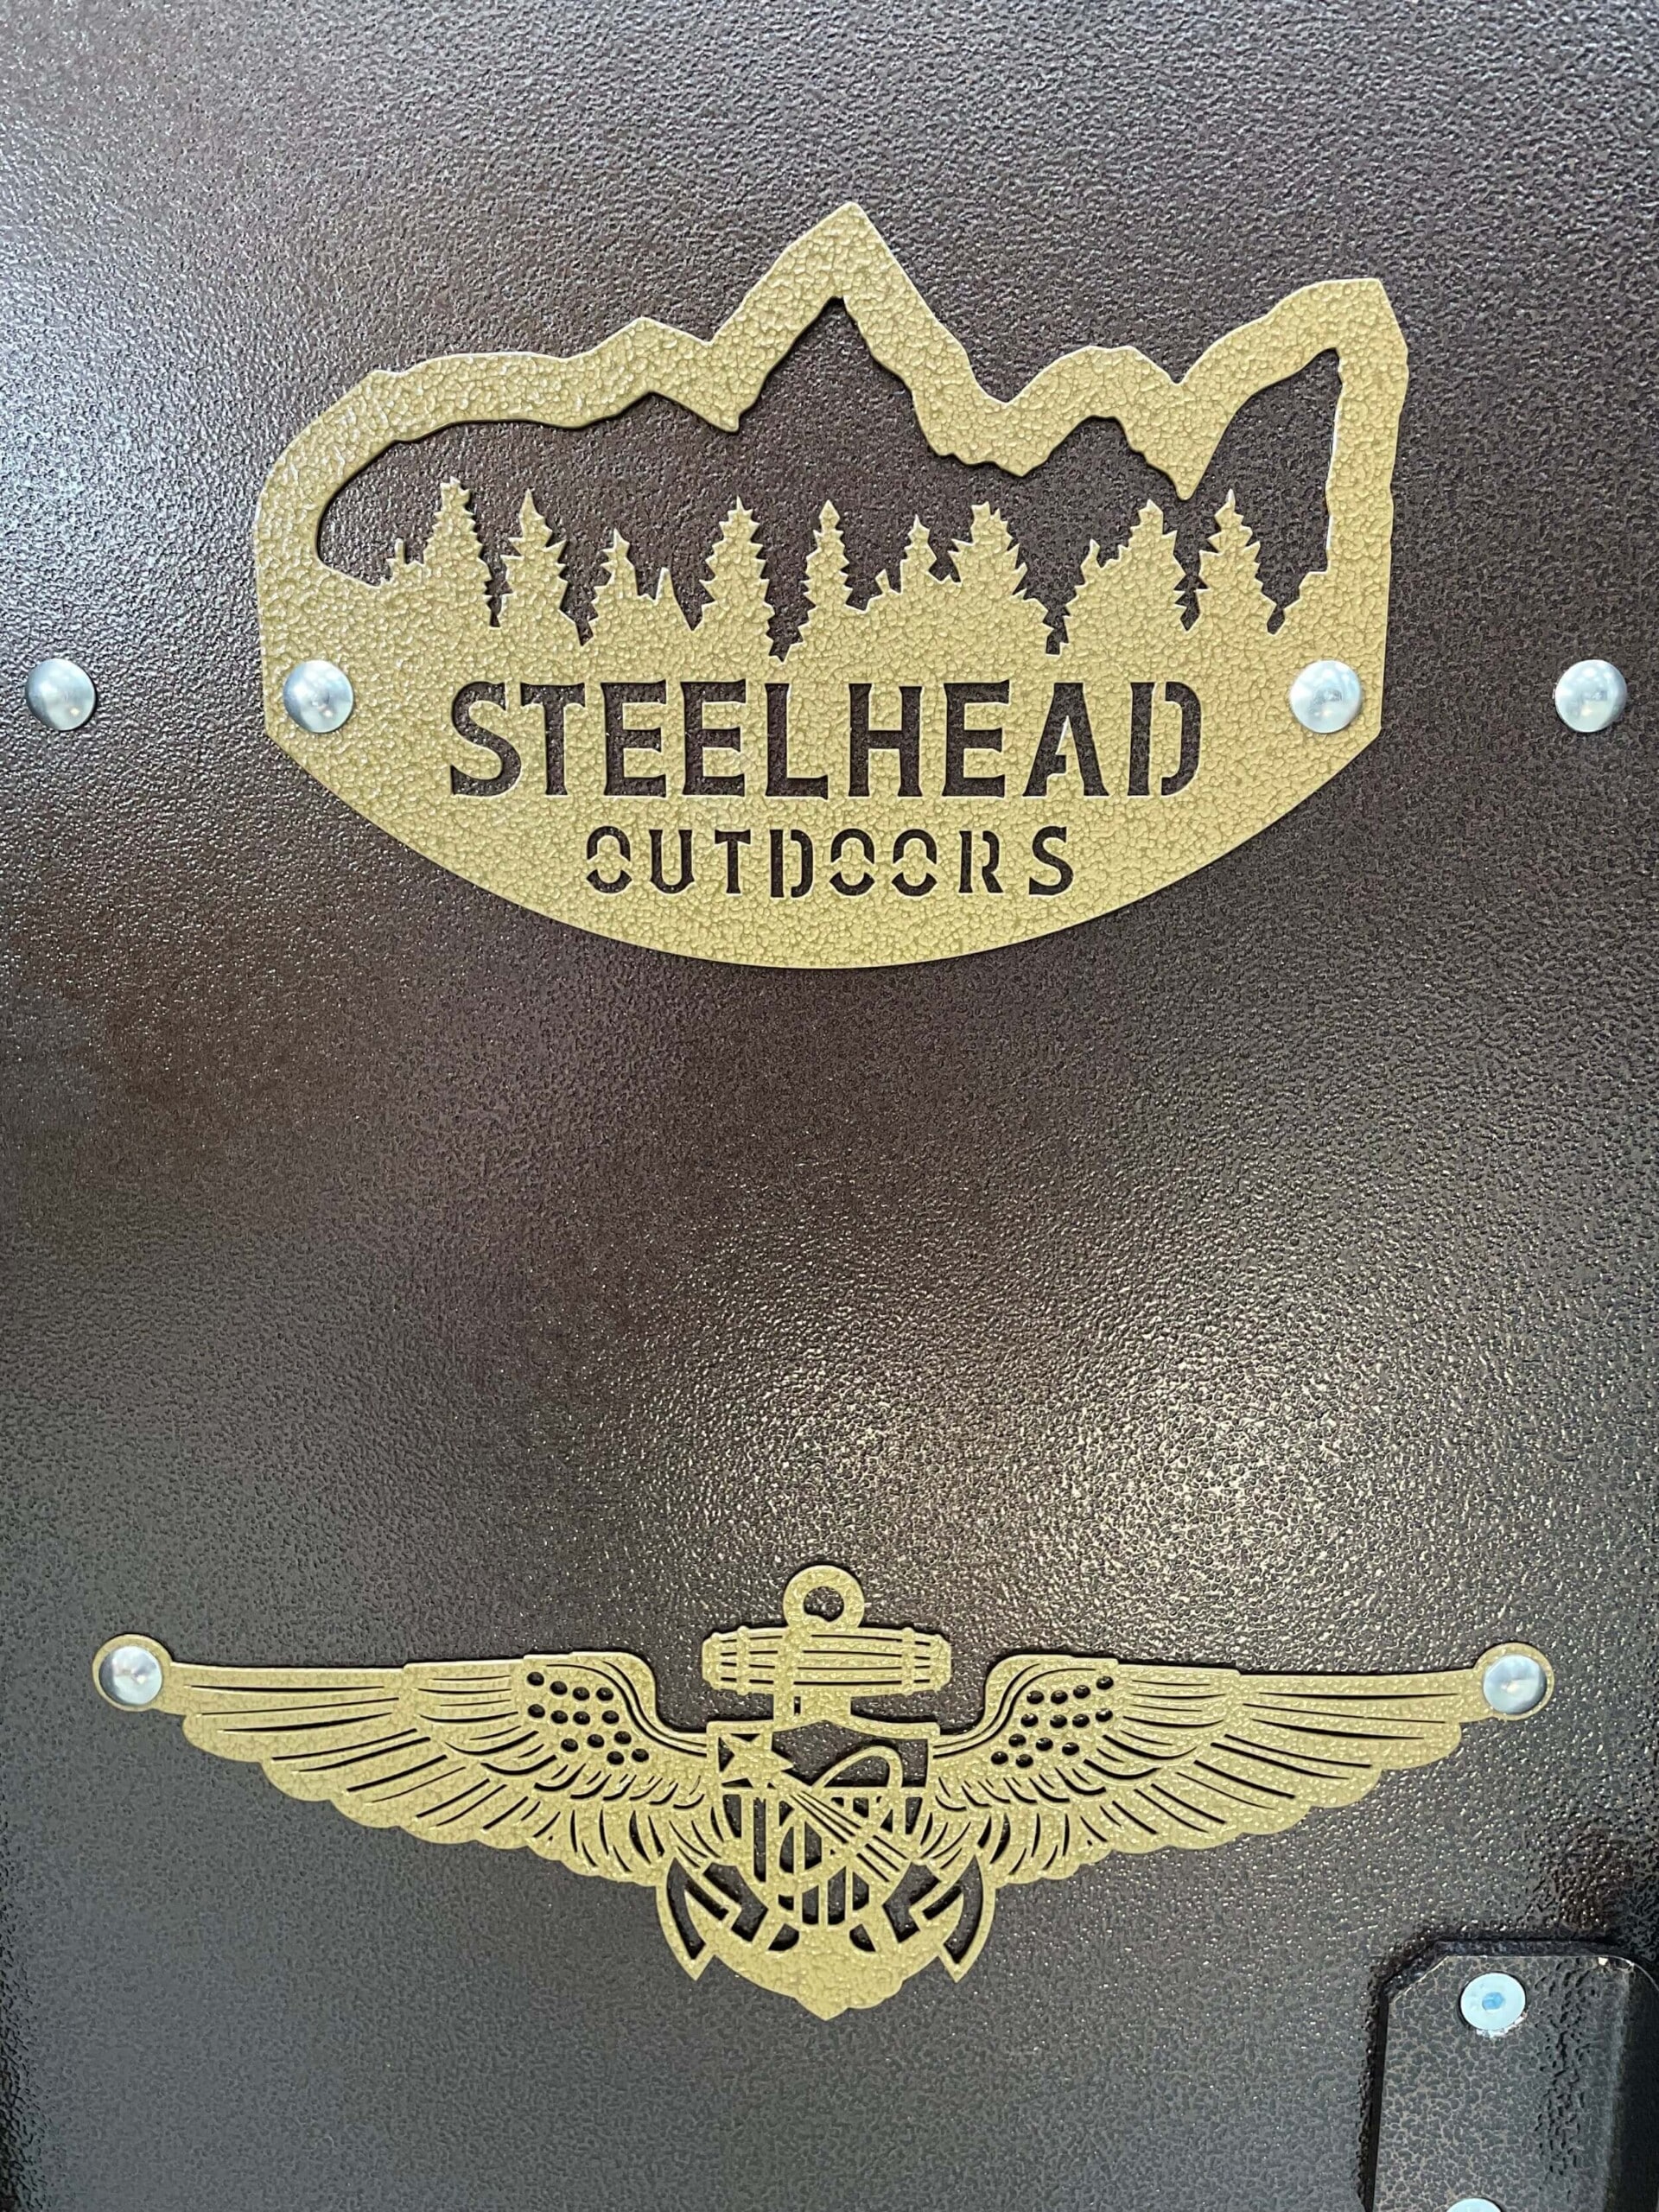 Steelhead Outdoors customized gun safe